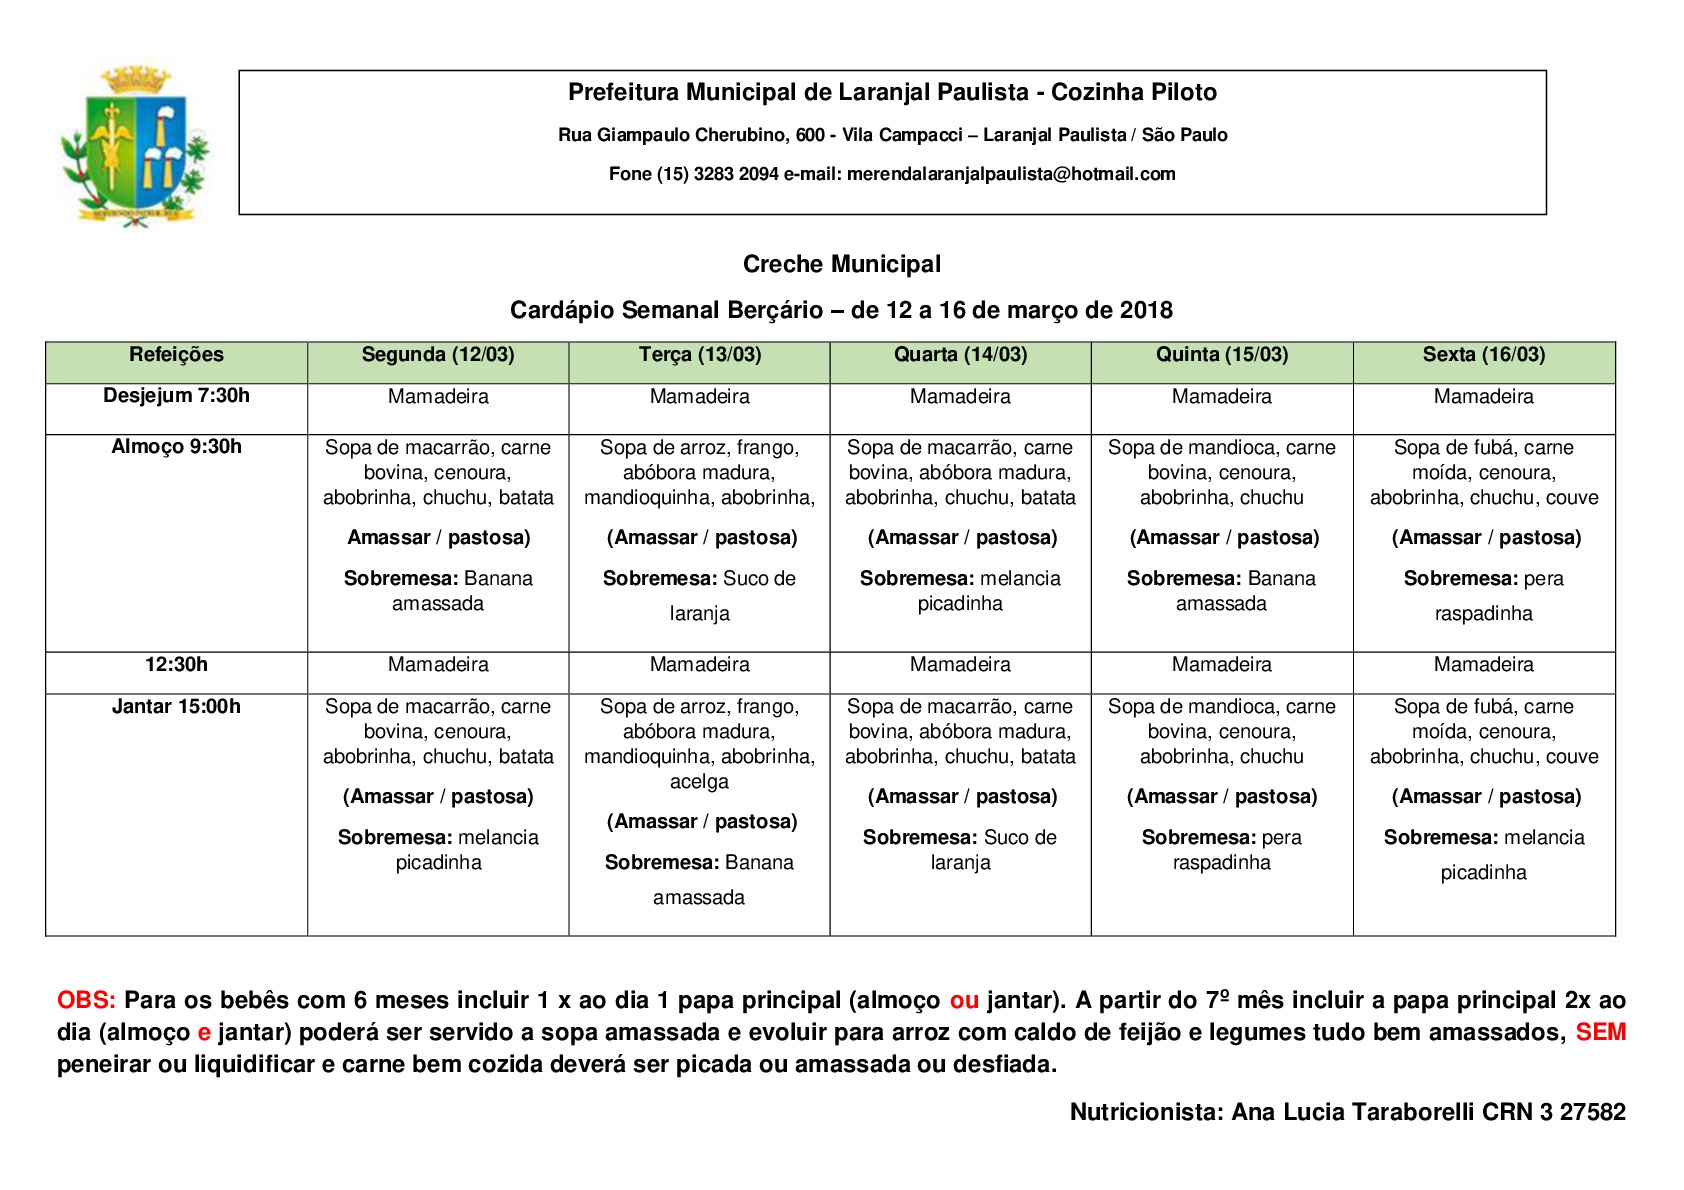 Cardápios para o mês de Março das Escolas e Creches de Laranjal Paulista.